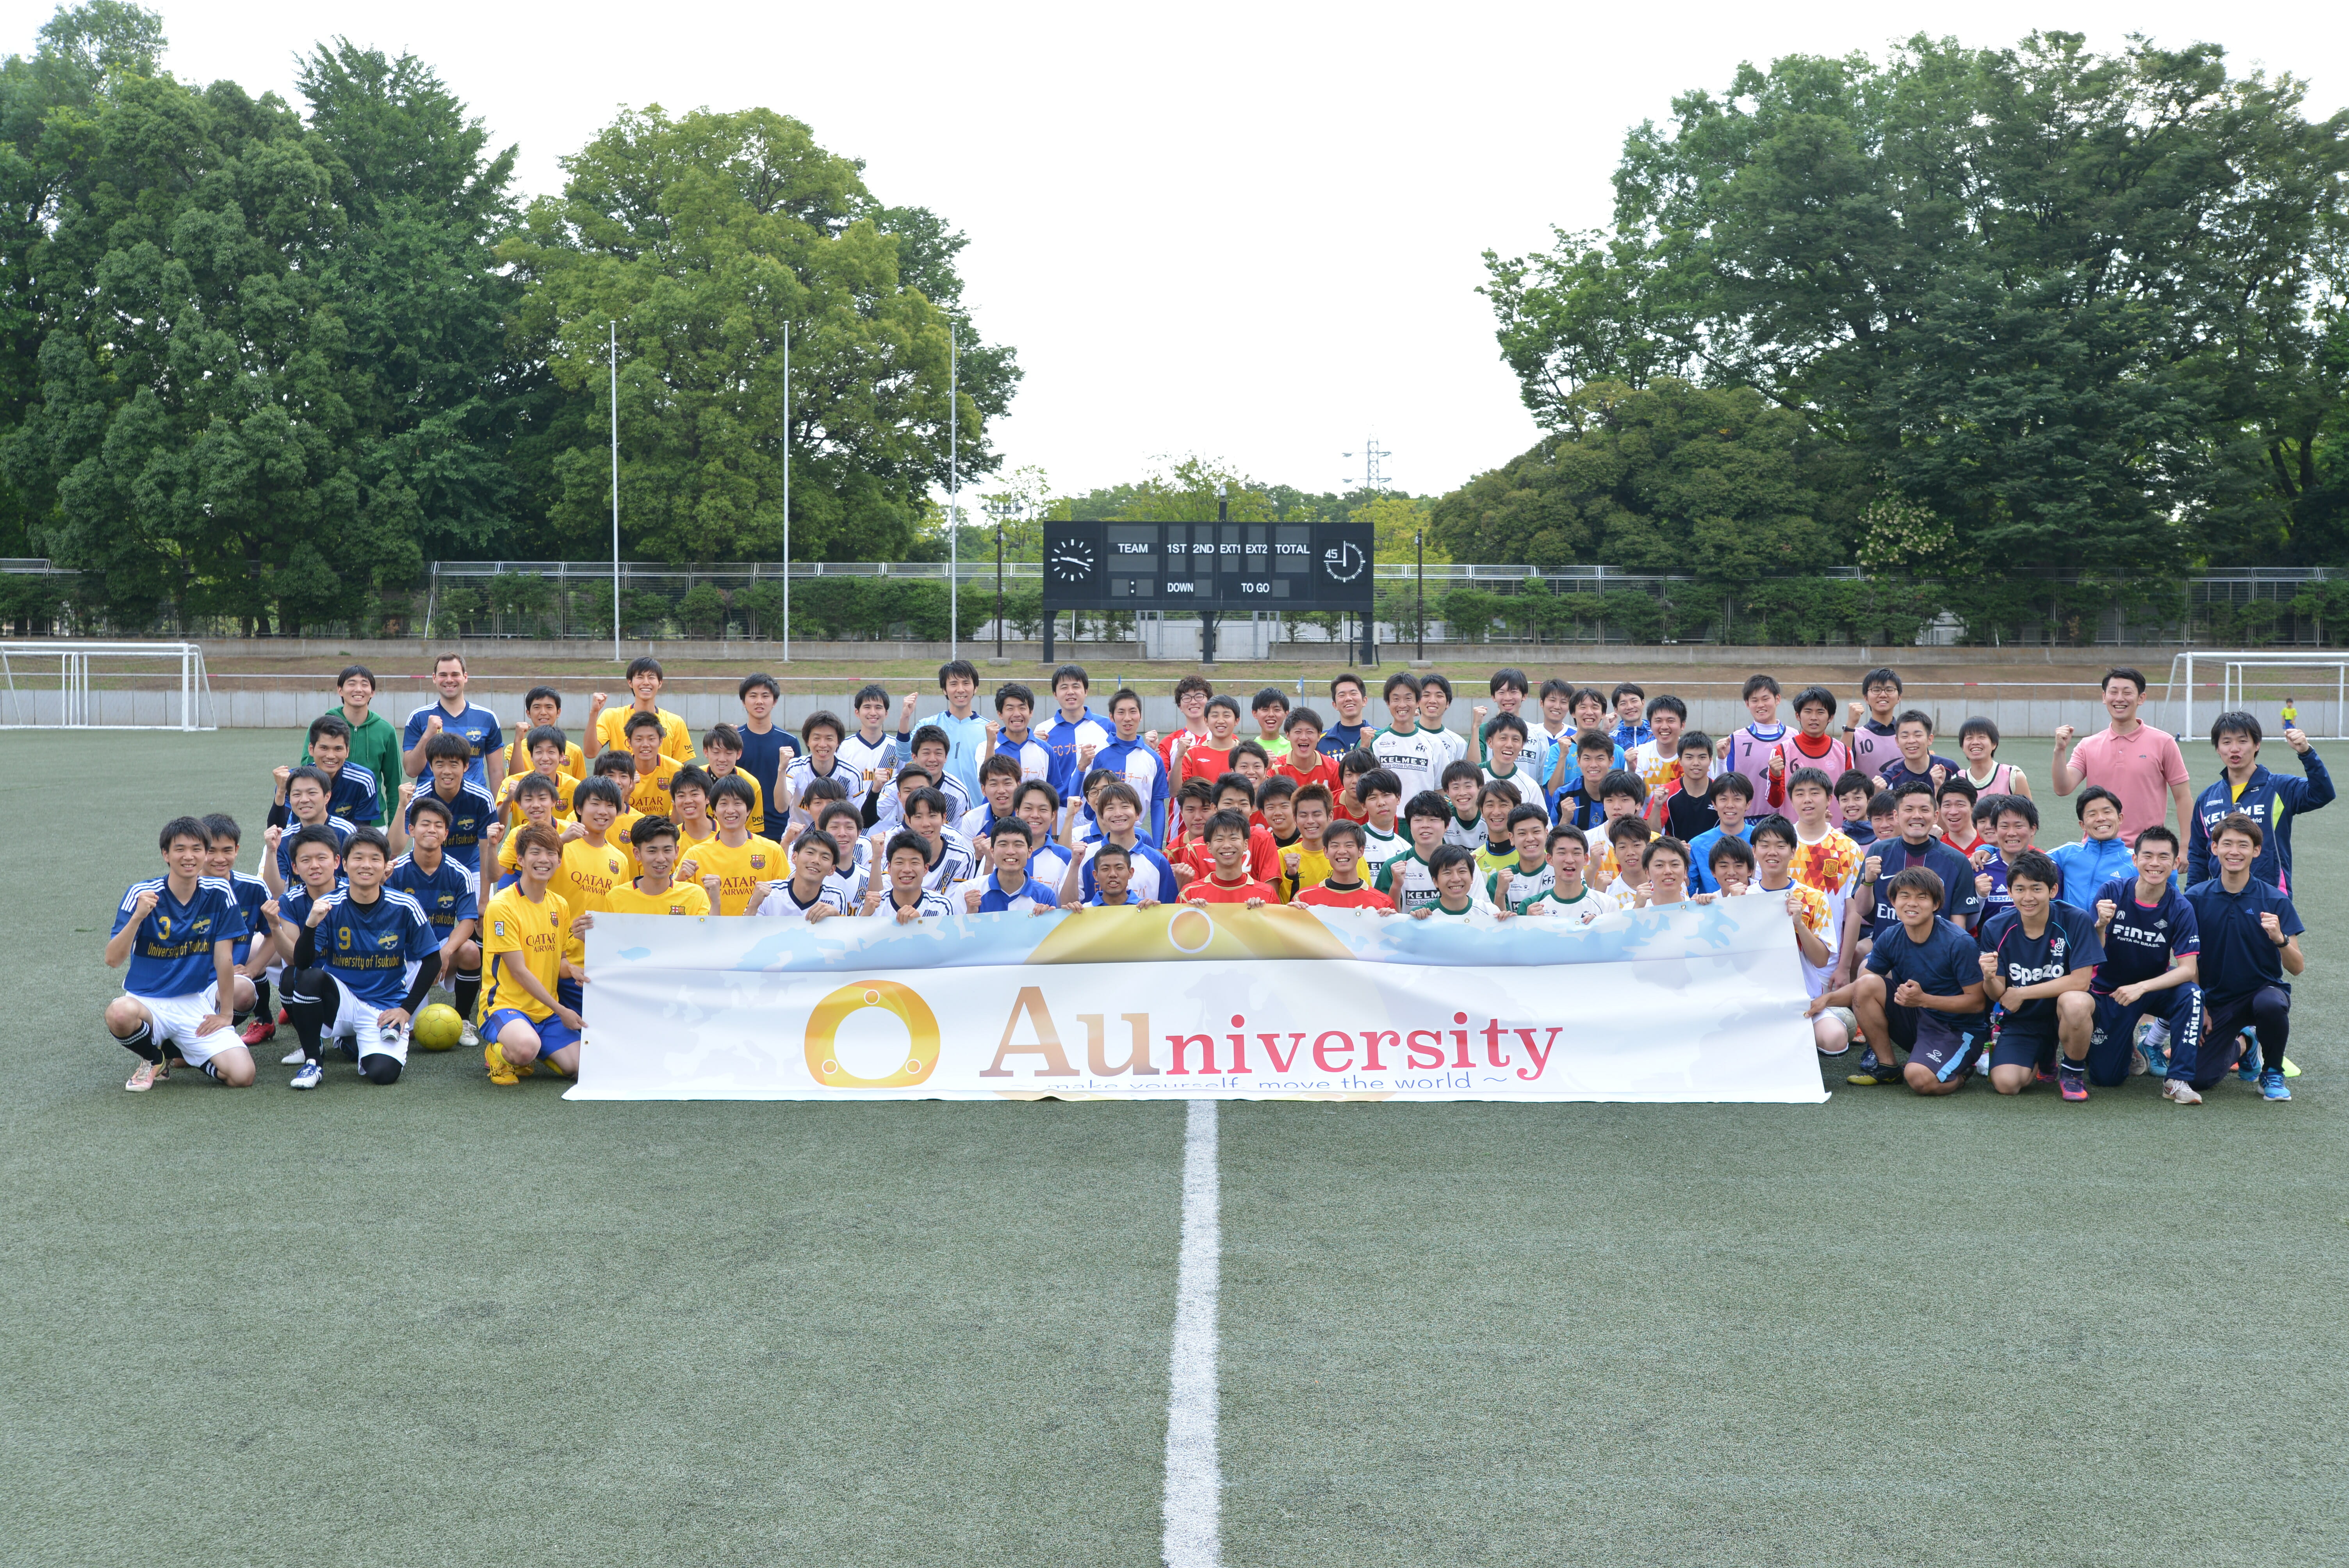 20180602 AuniversityCupサッカー大会 in summer